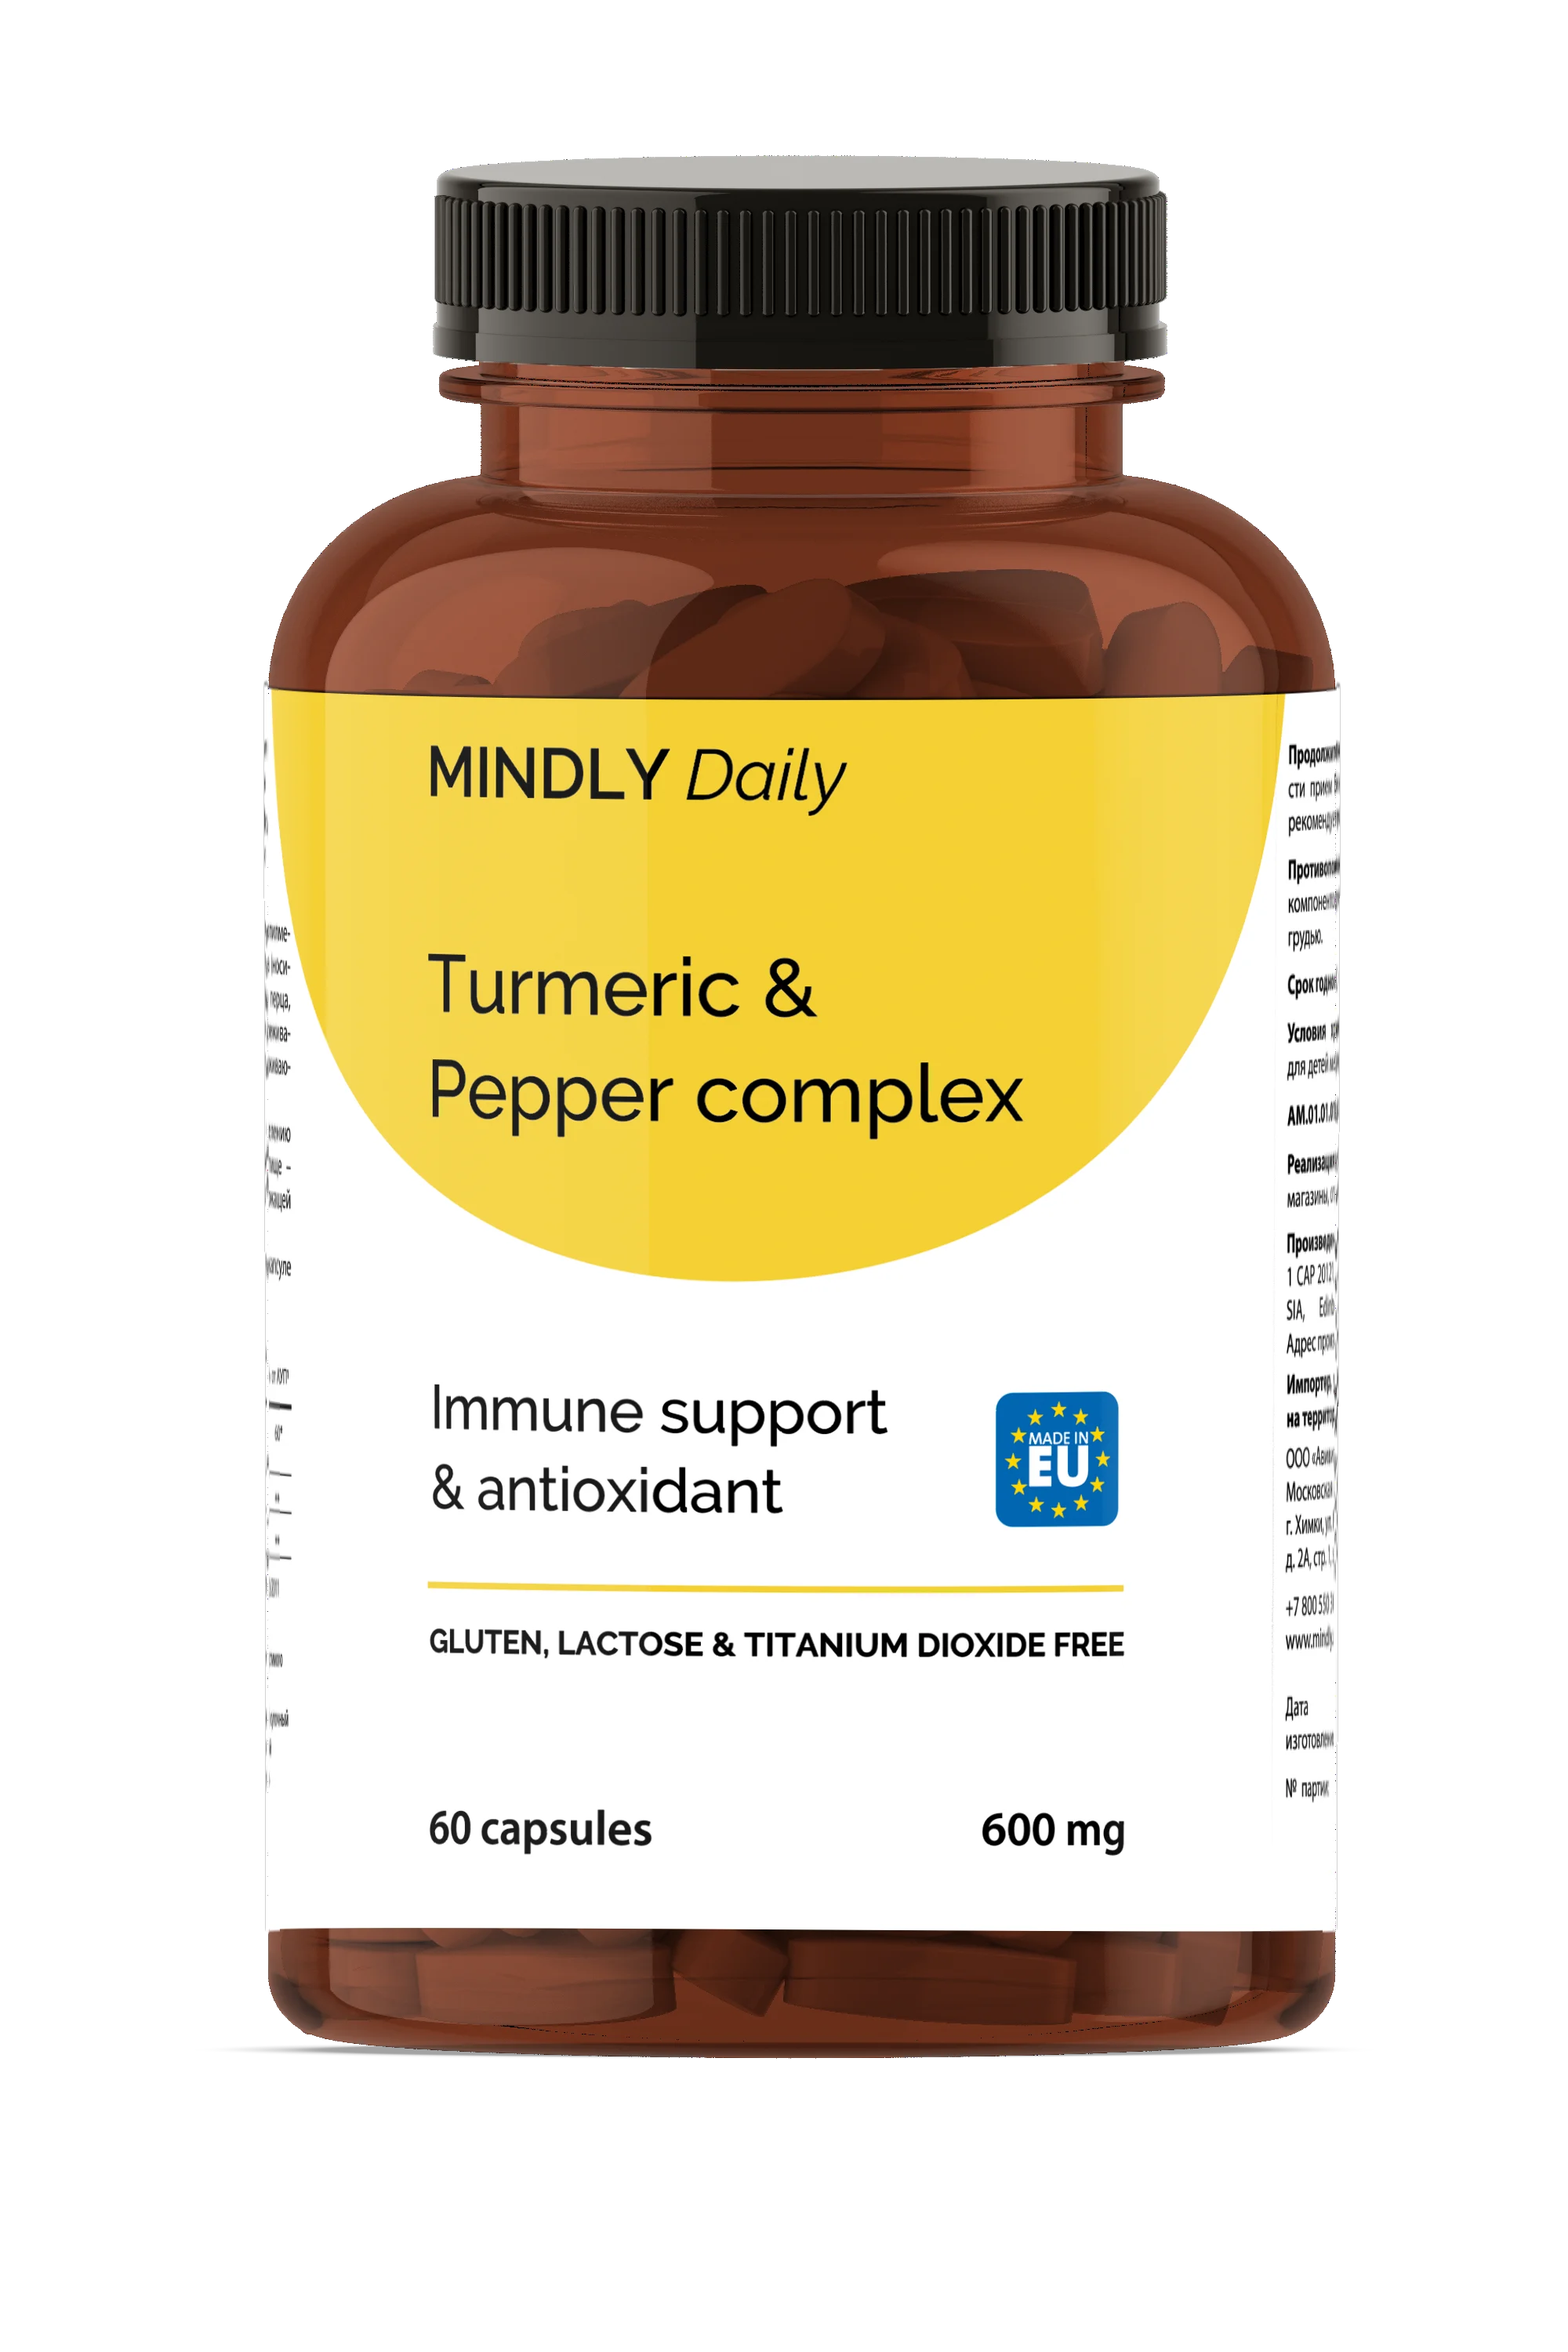 Turmeric & Pepper complex